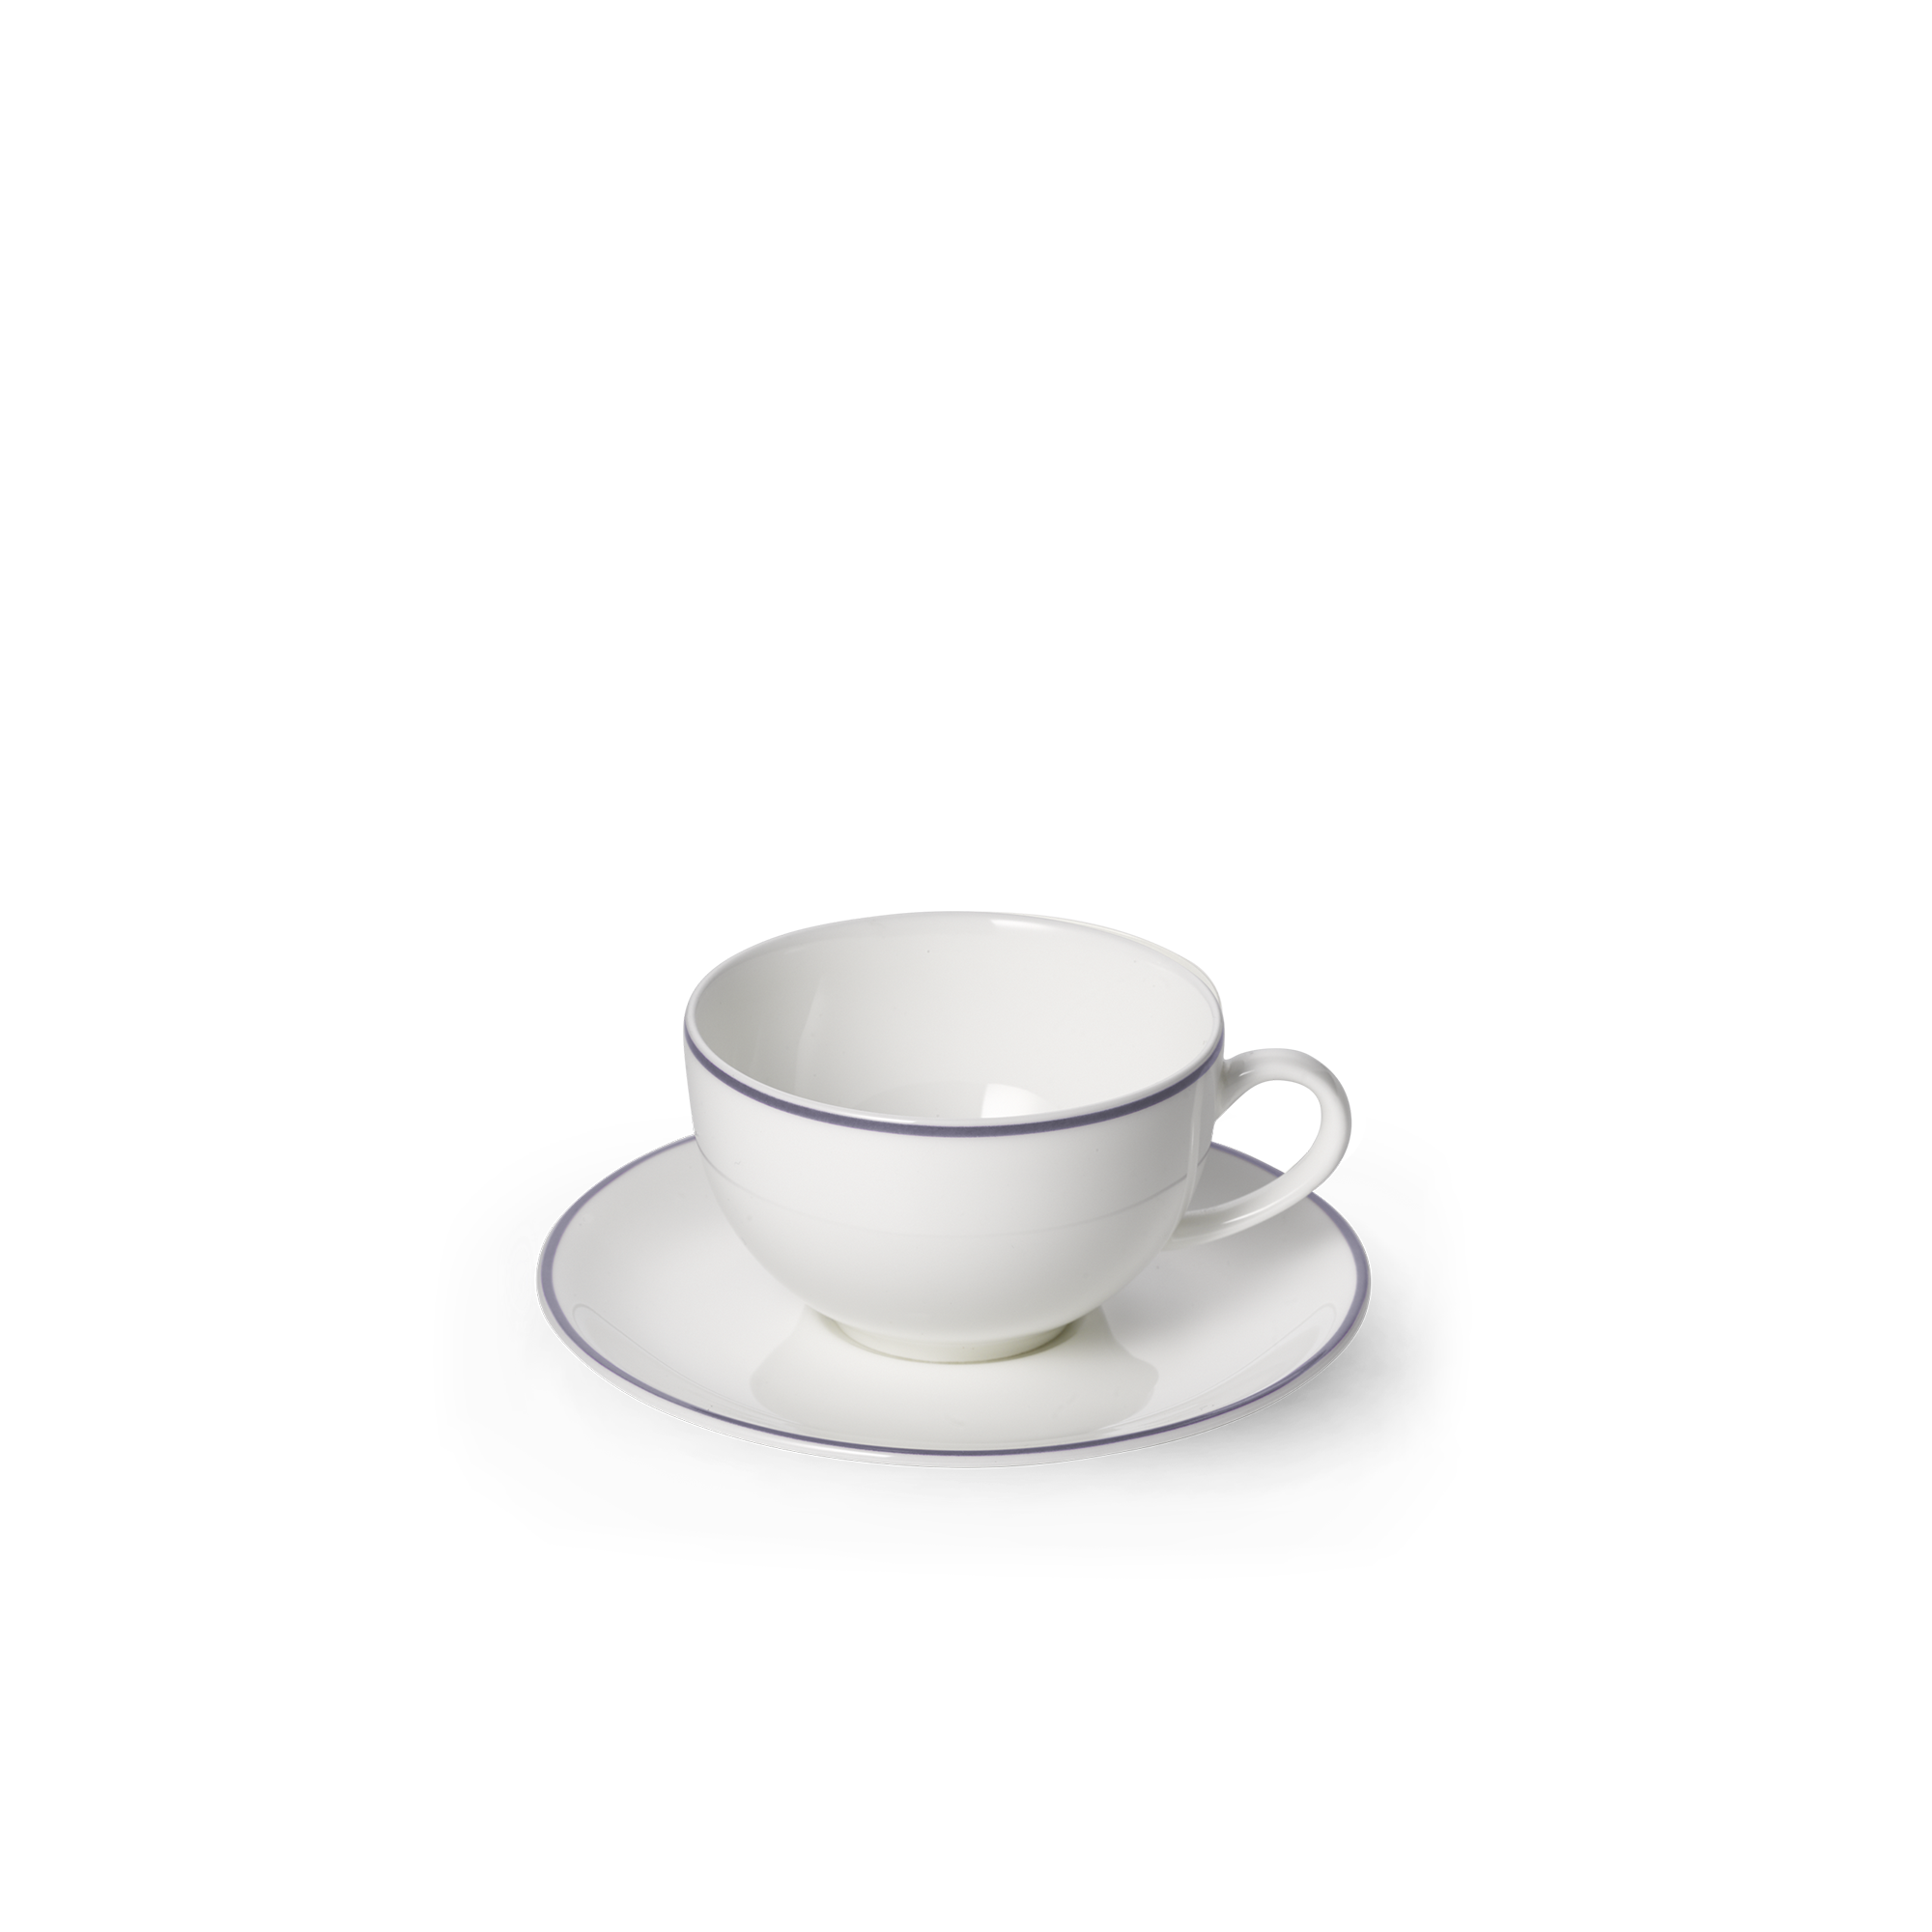 Simplicity espresso cup gray